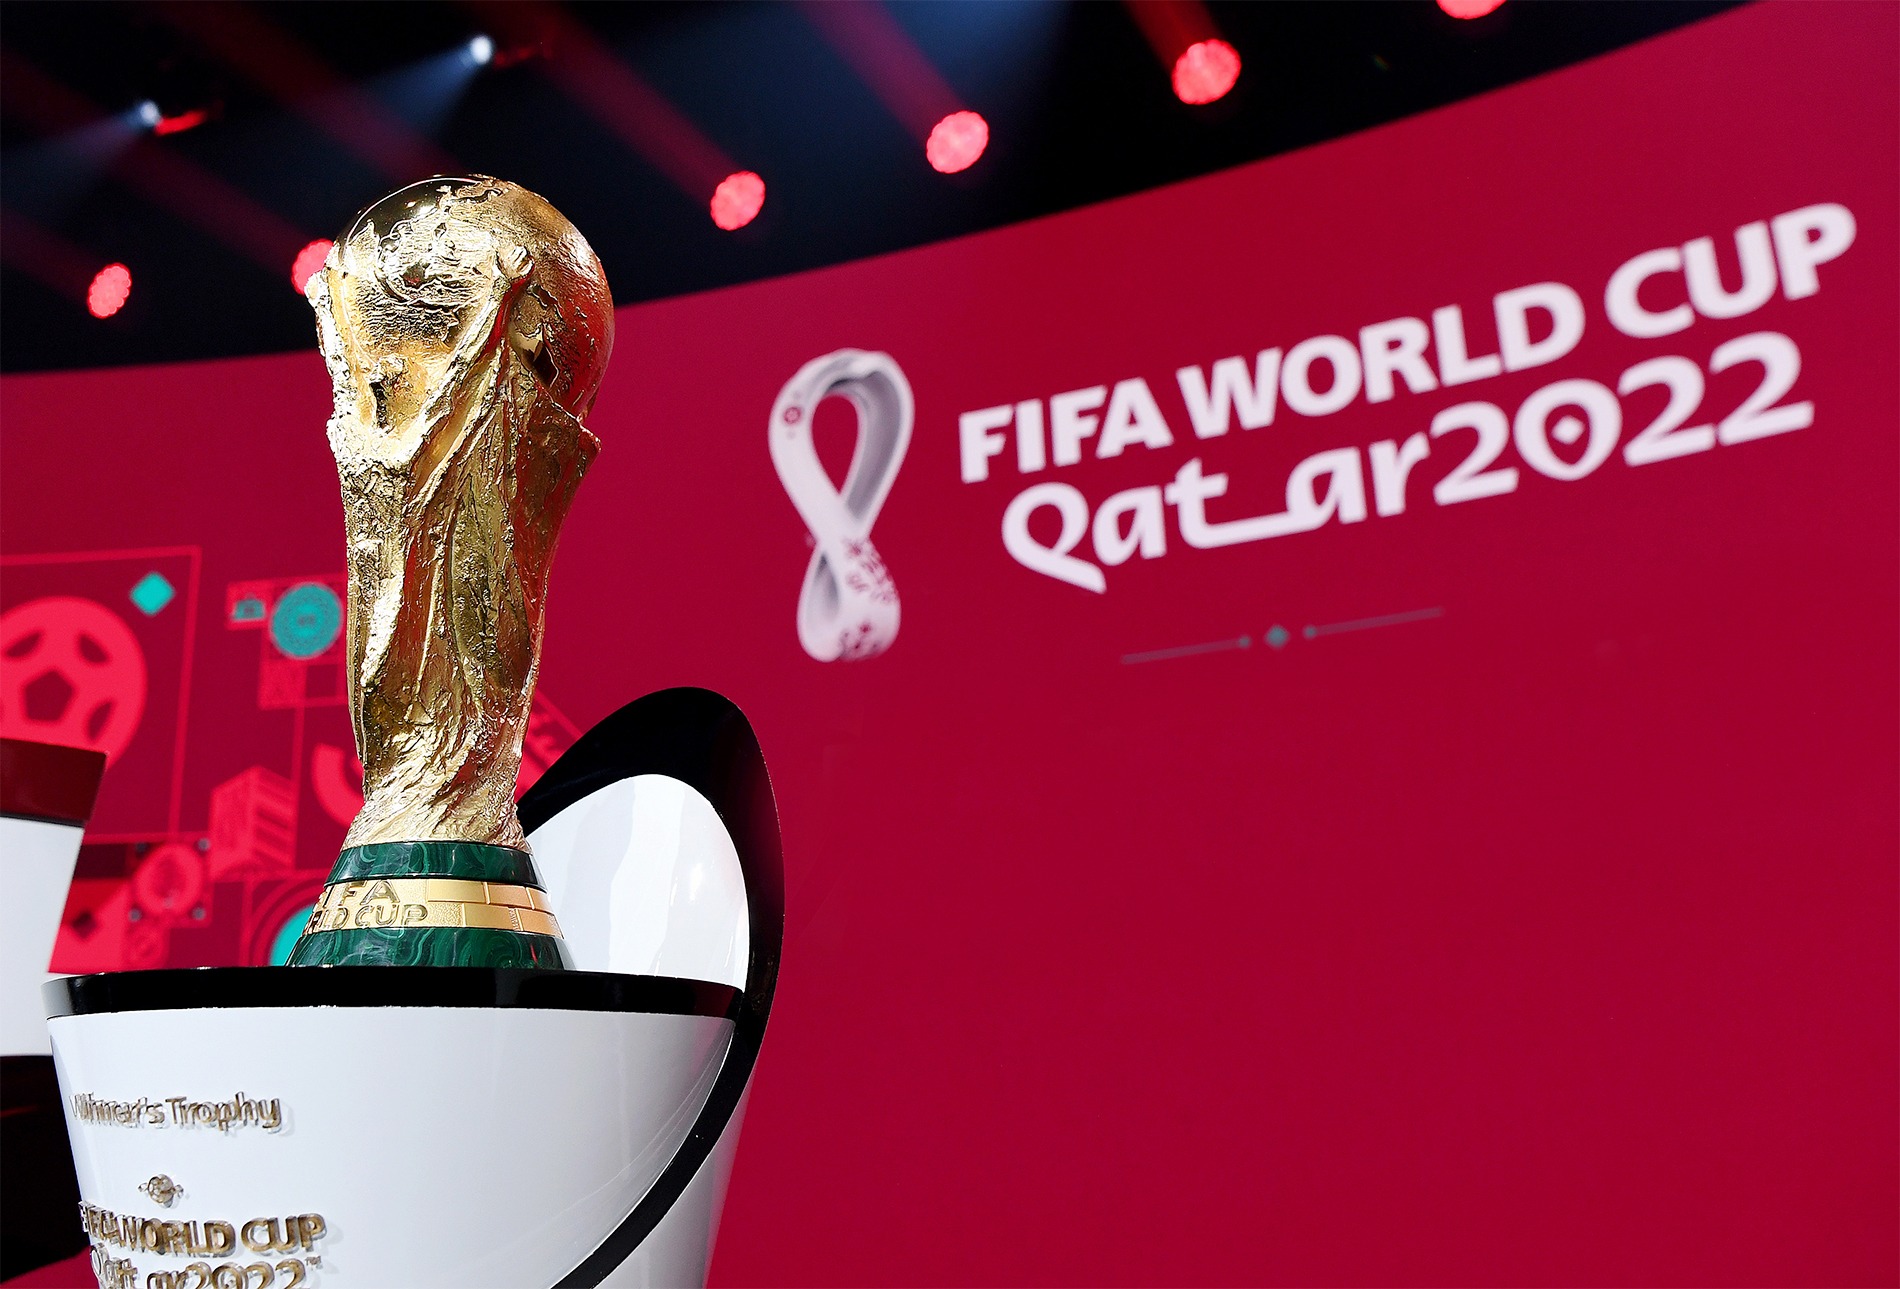 Mùa giải World Cup 2022 sắp tới có điểm gì thú vị?